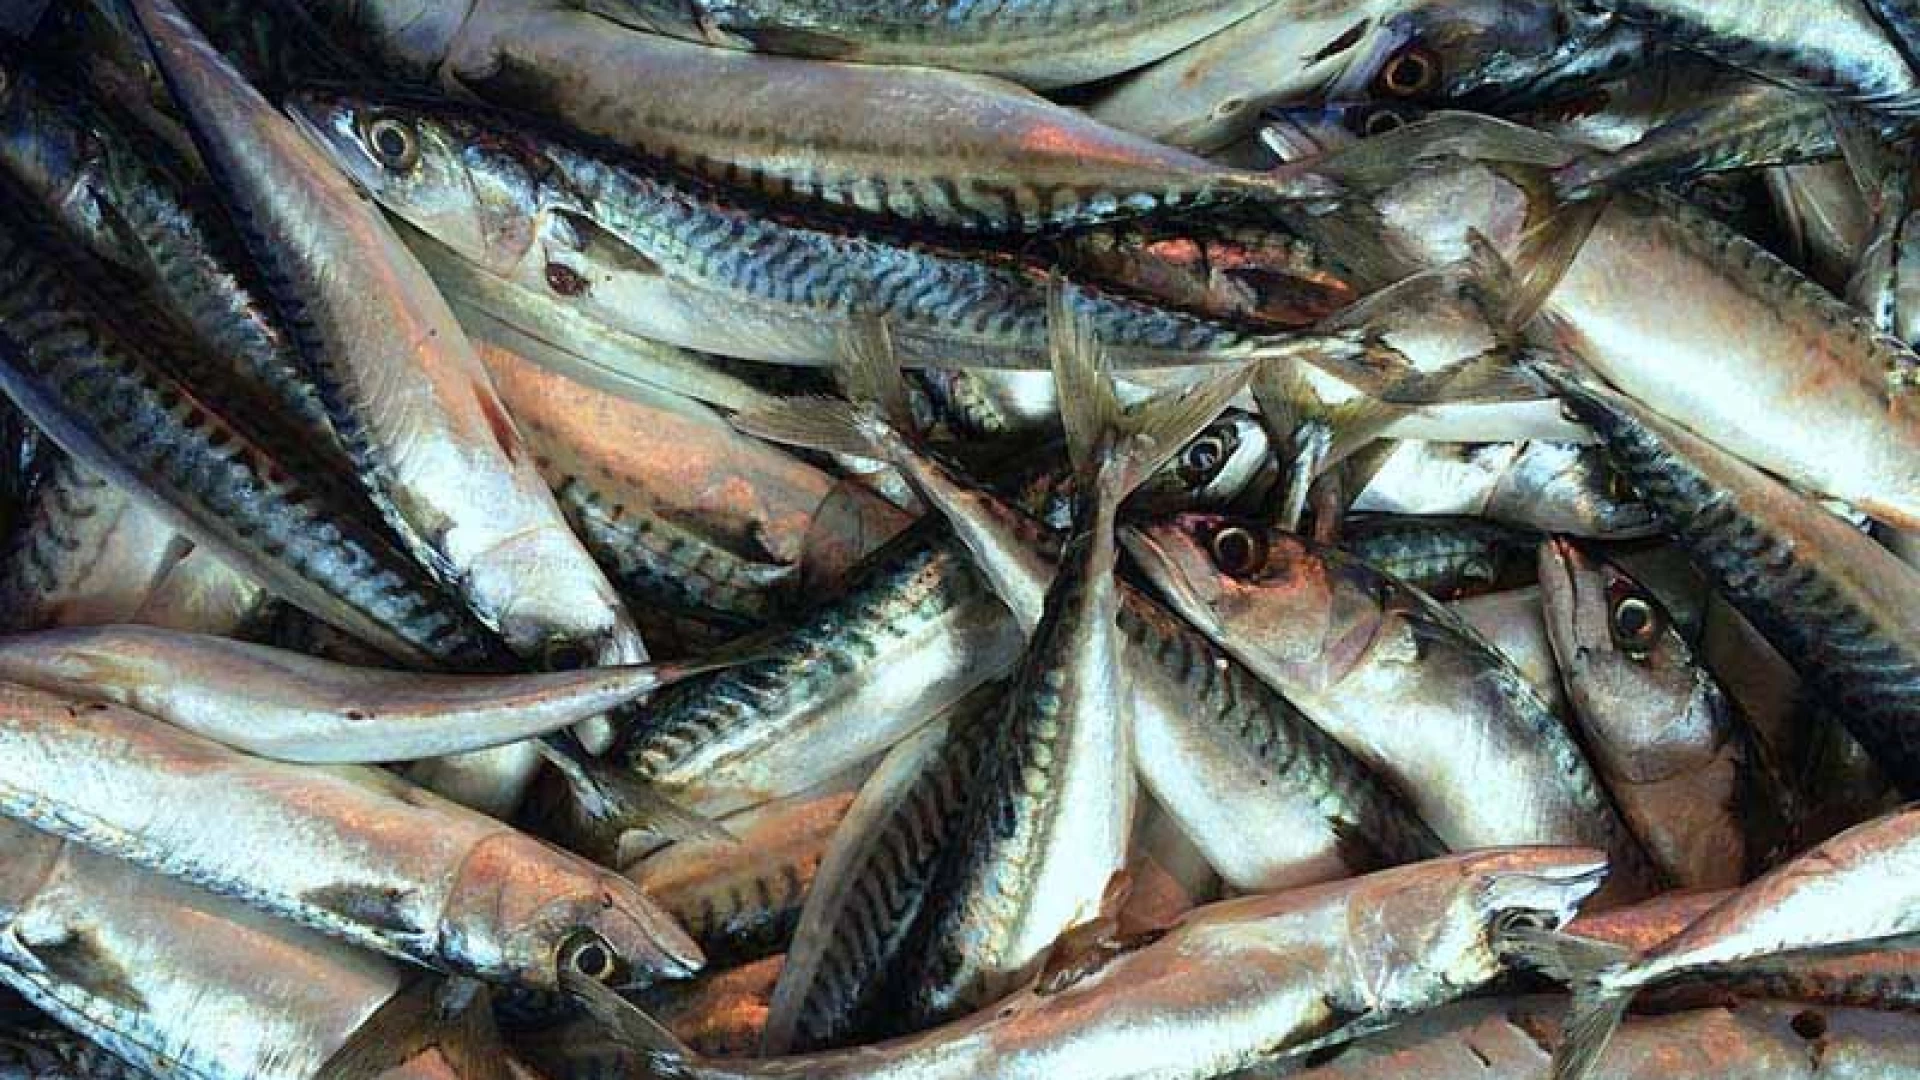 Dal peschereccio alla tavola: come prevenire l’intossicazione alimentare da istamina. La ricerca dell’Izs di Teramo